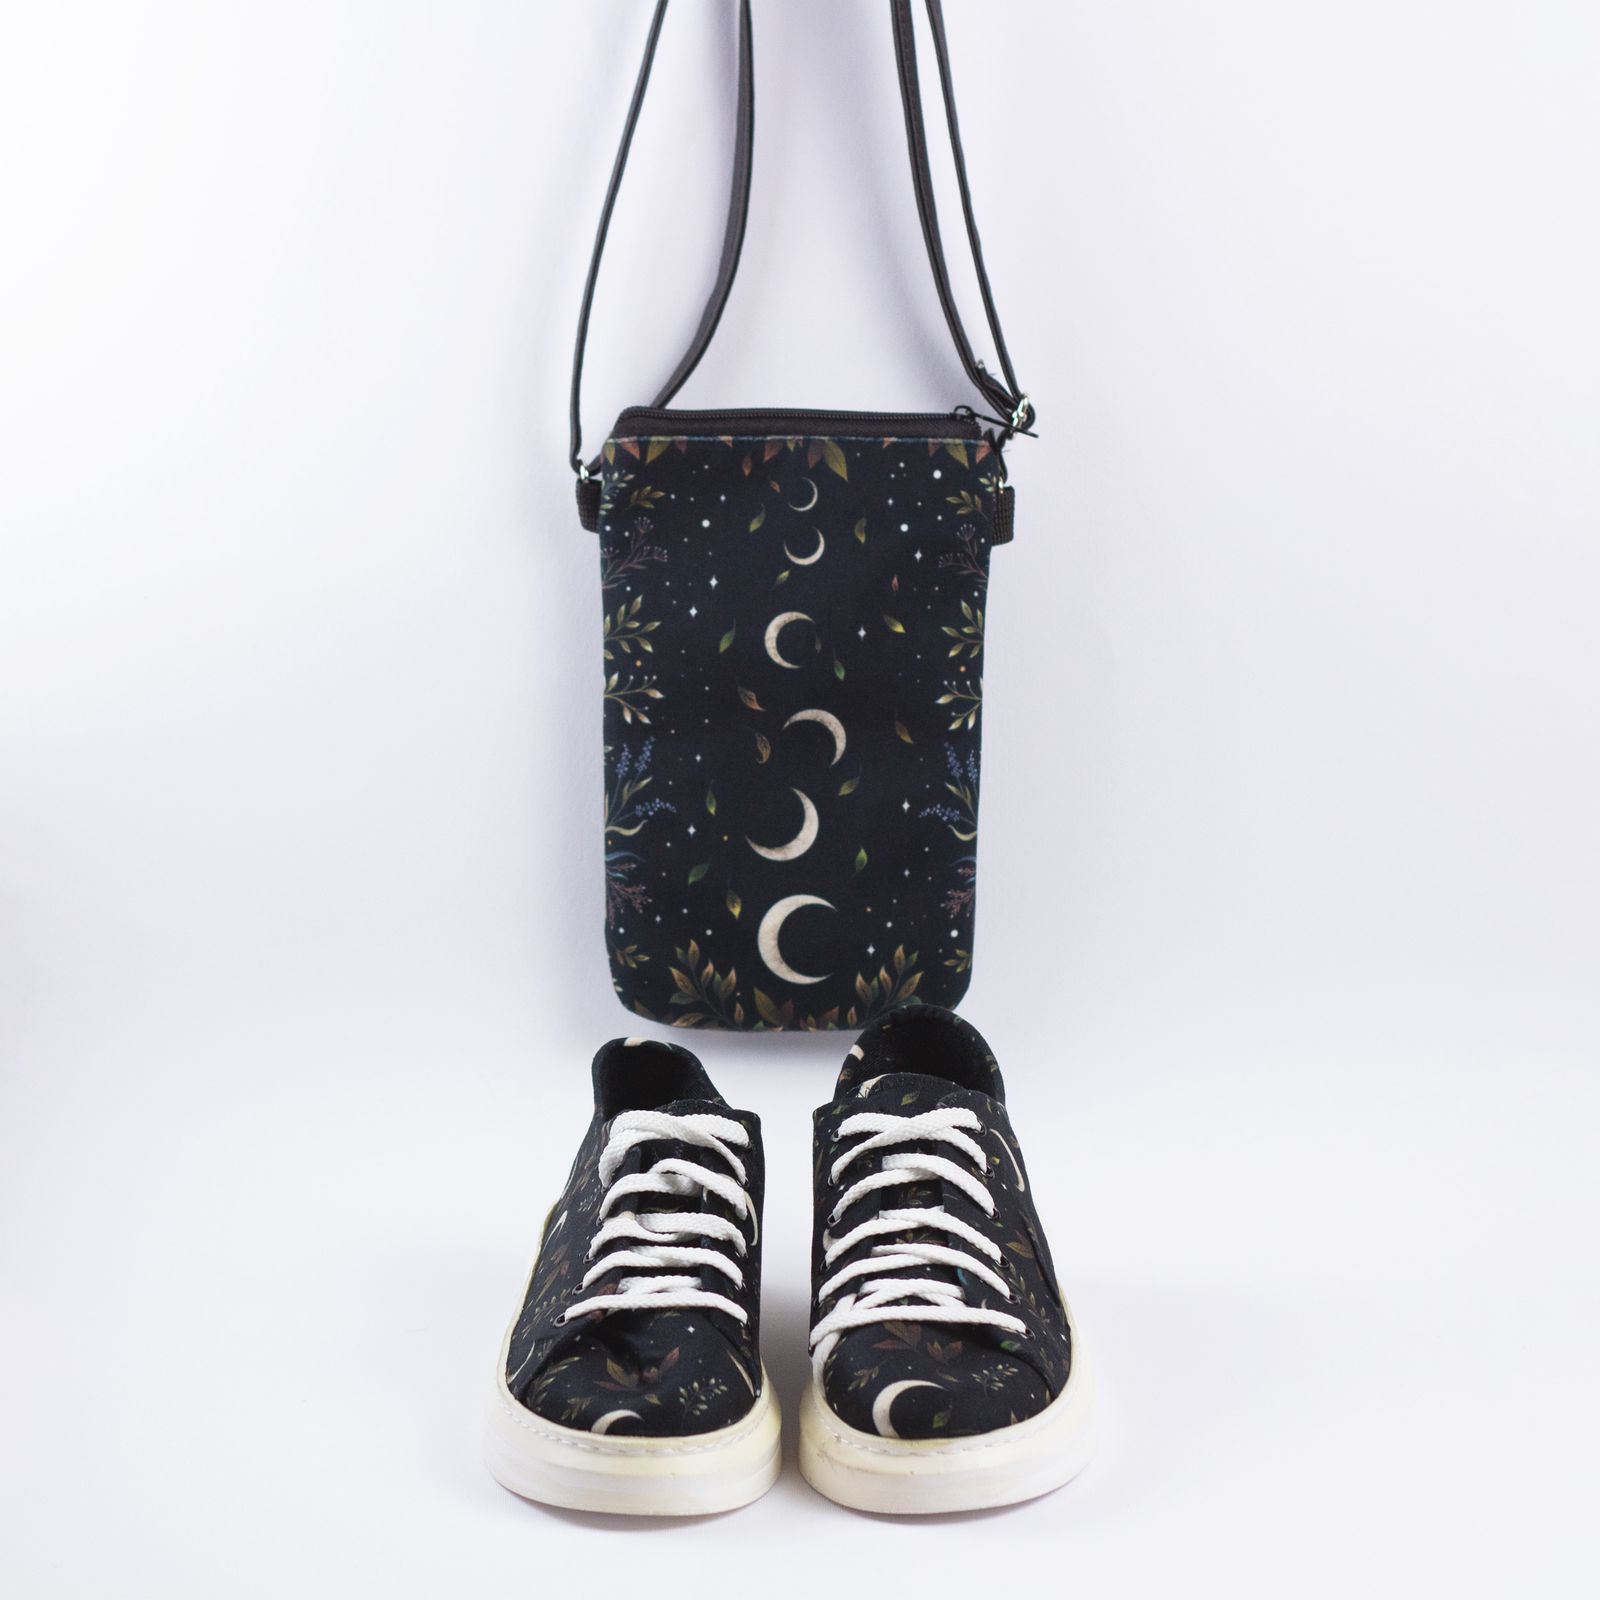 ست کیف و کفش زنانه مدل ماه -  - 3